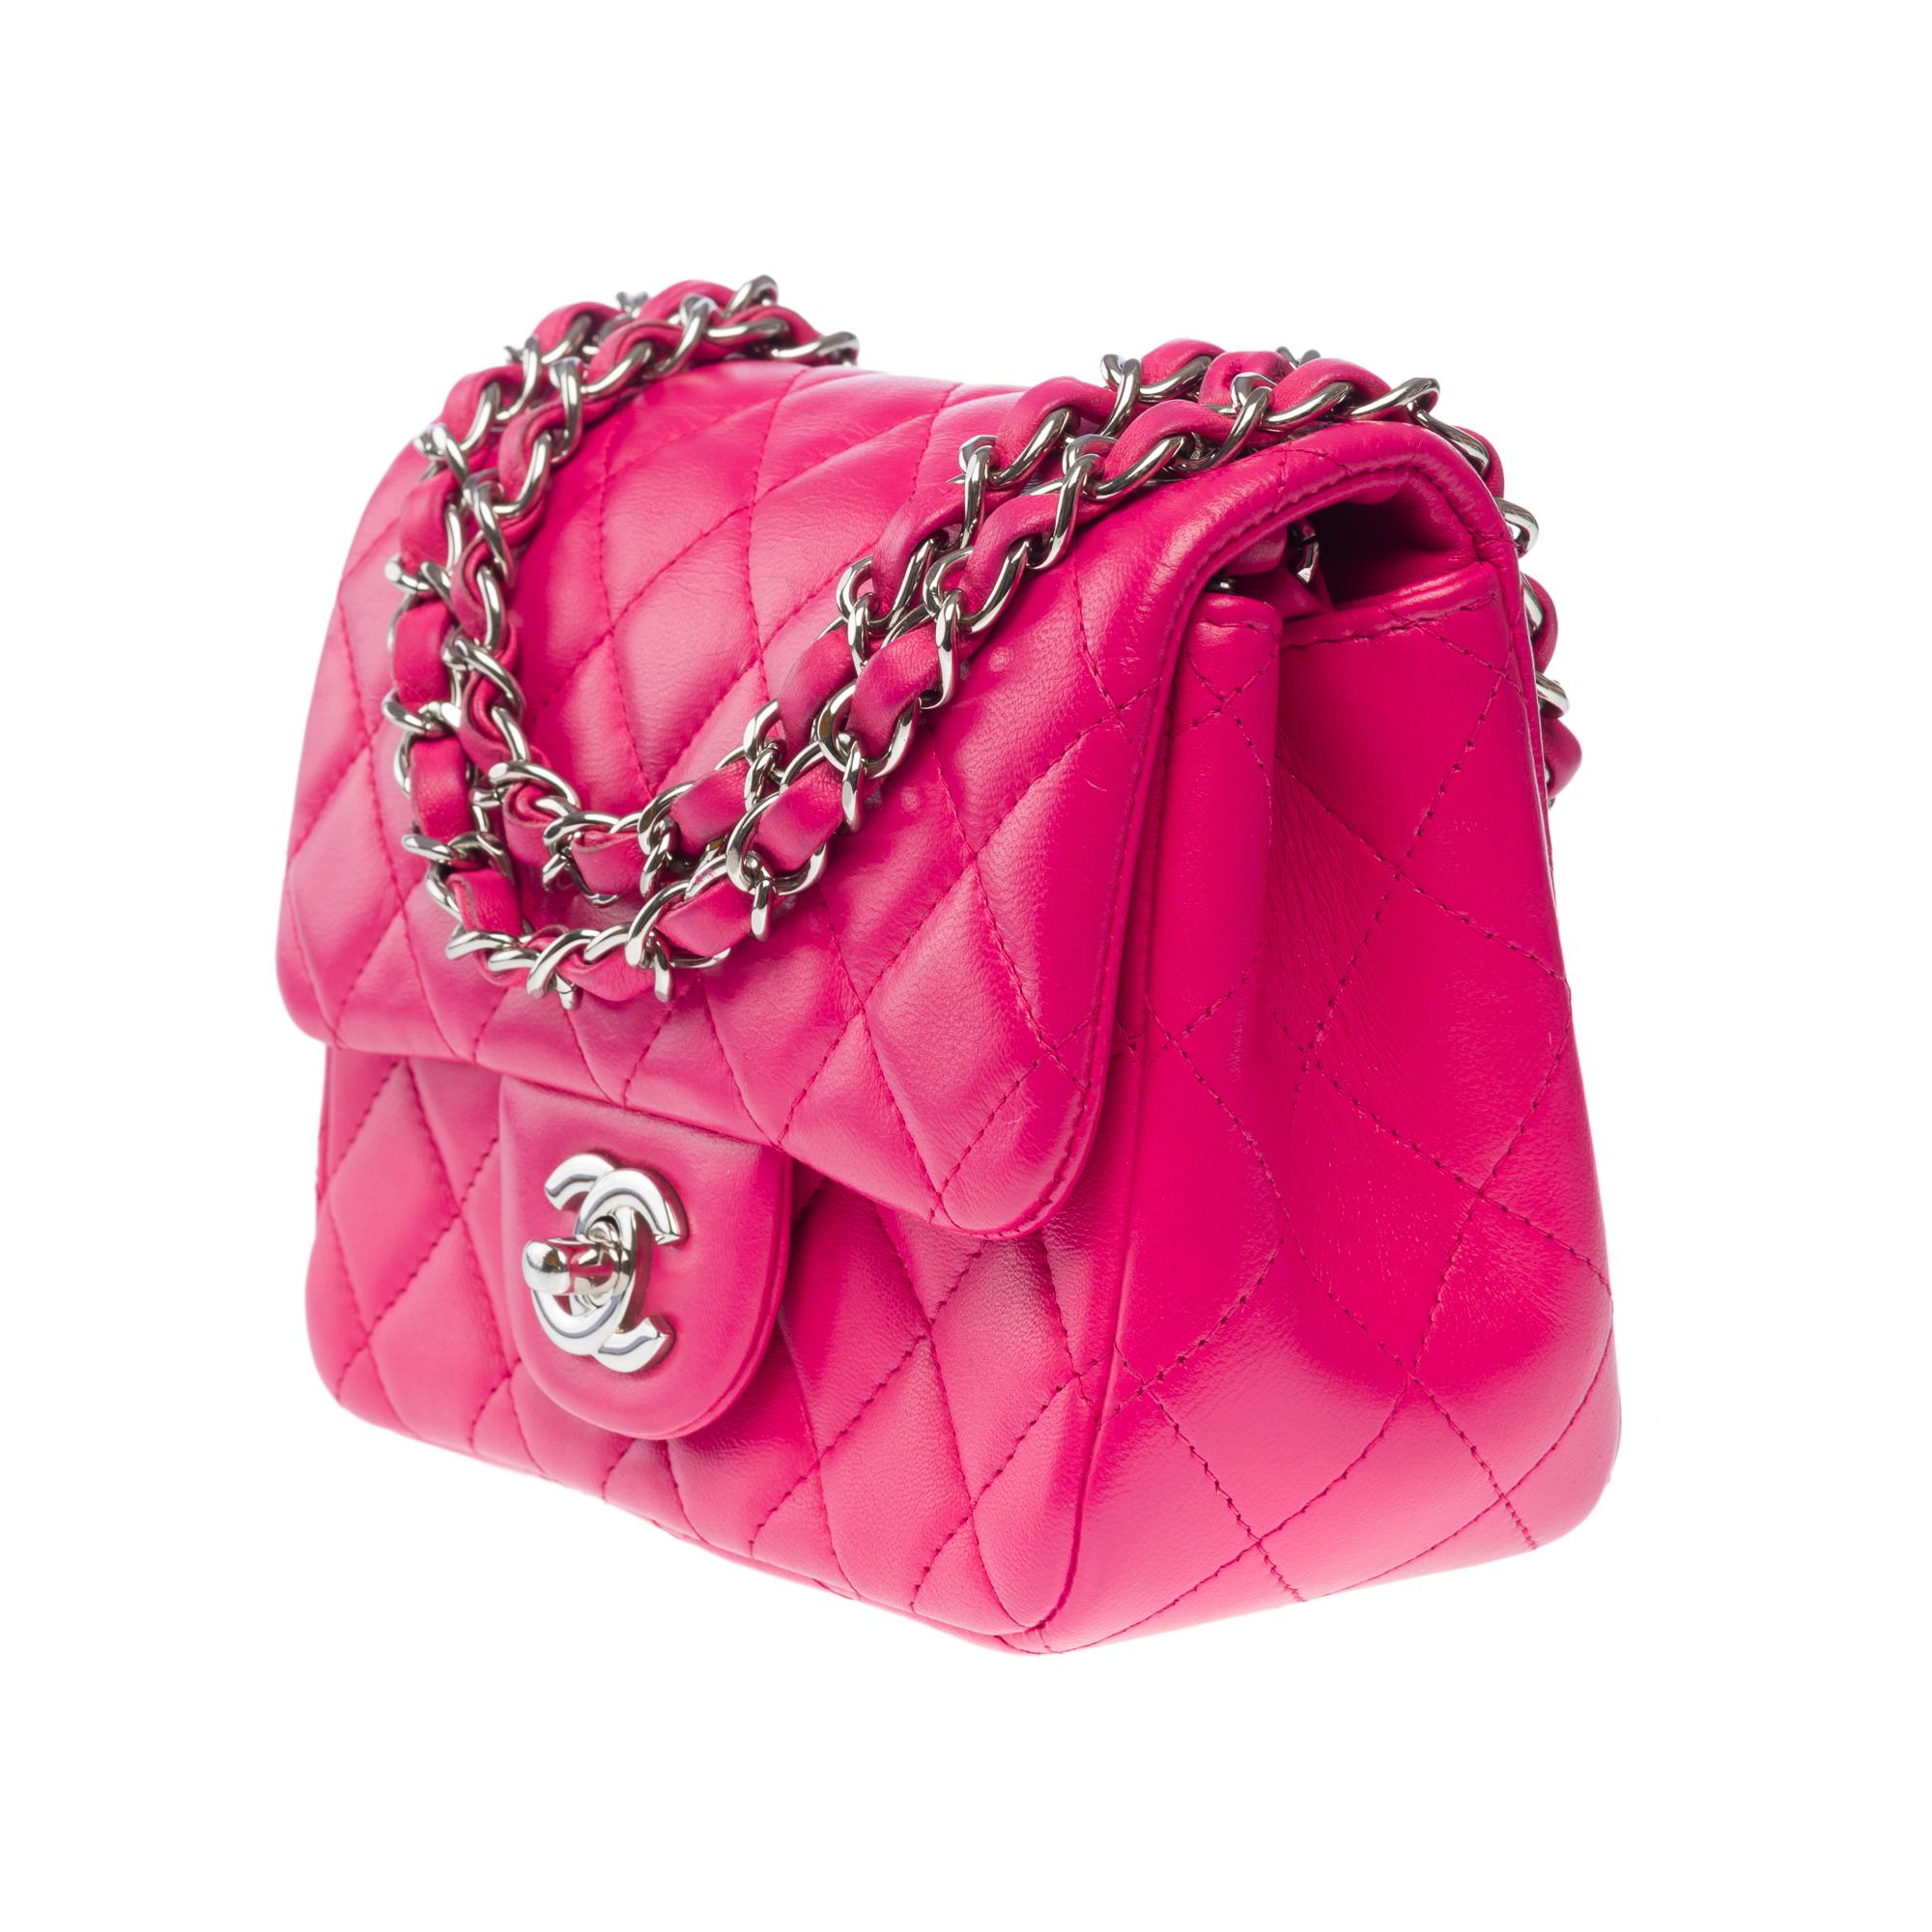 Wunderschöne Chanel Mini Timeless Umhängetasche mit Überschlag aus gestepptem Leder in Rosa, SHW Damen